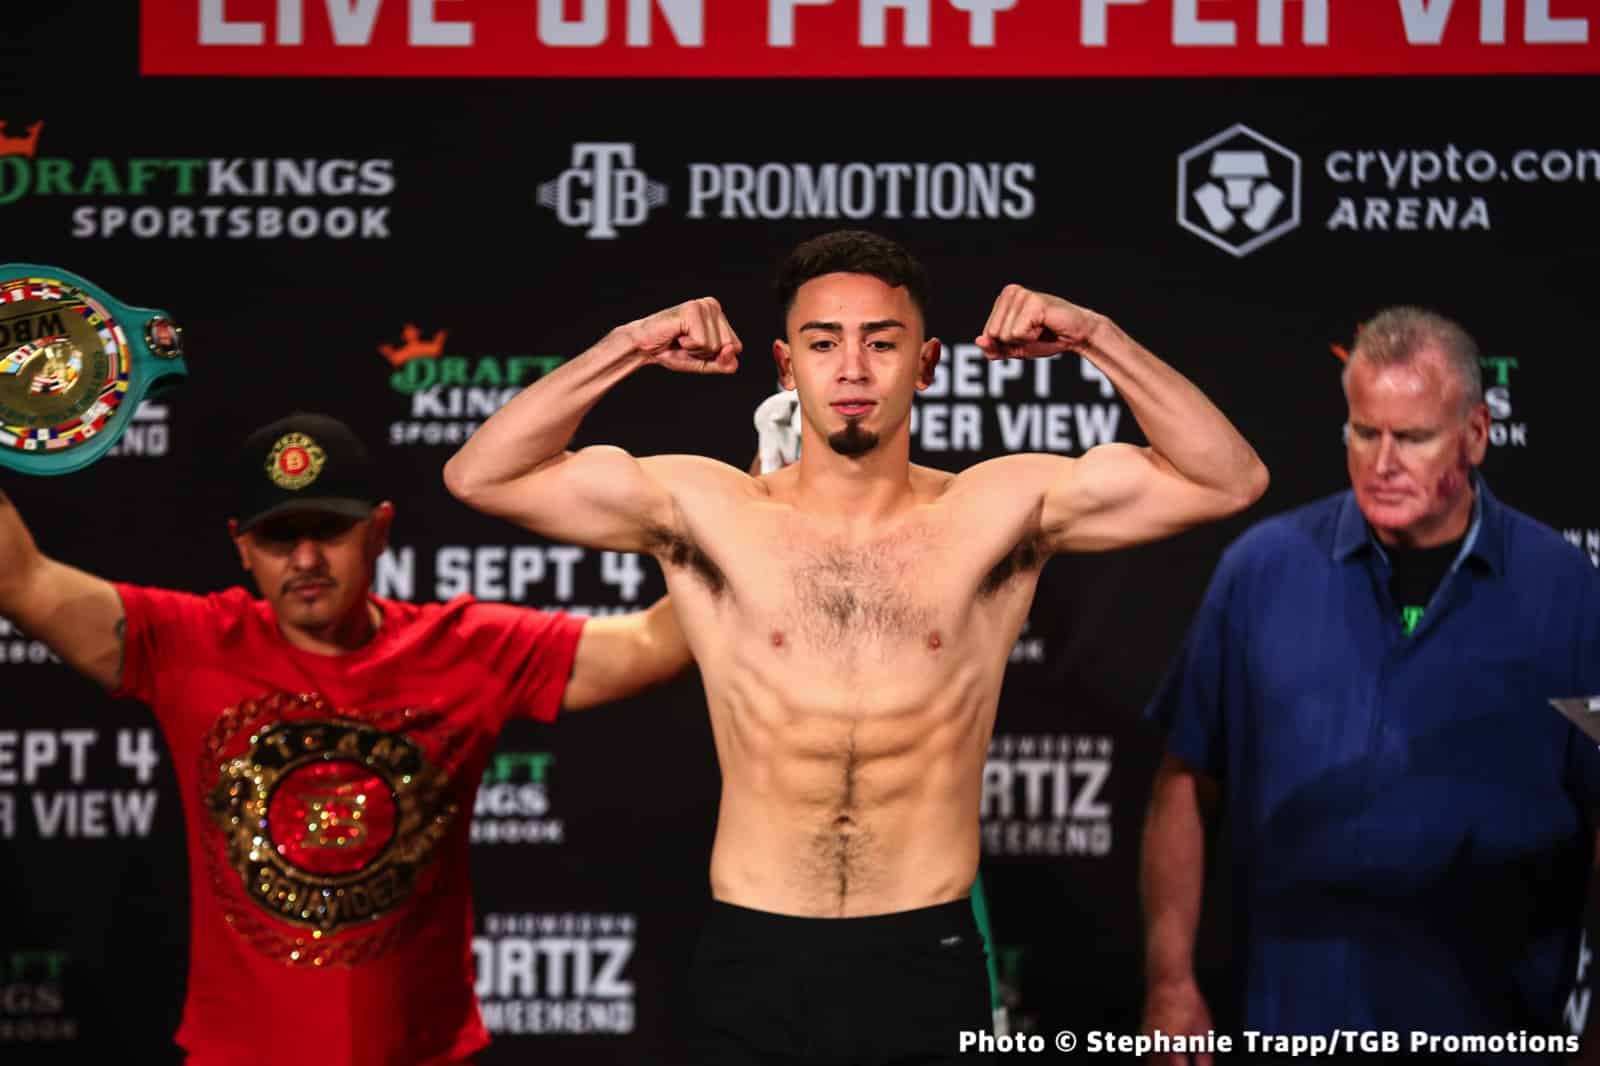 Andy Ruiz Jr vs. Luis Ortiz - weights